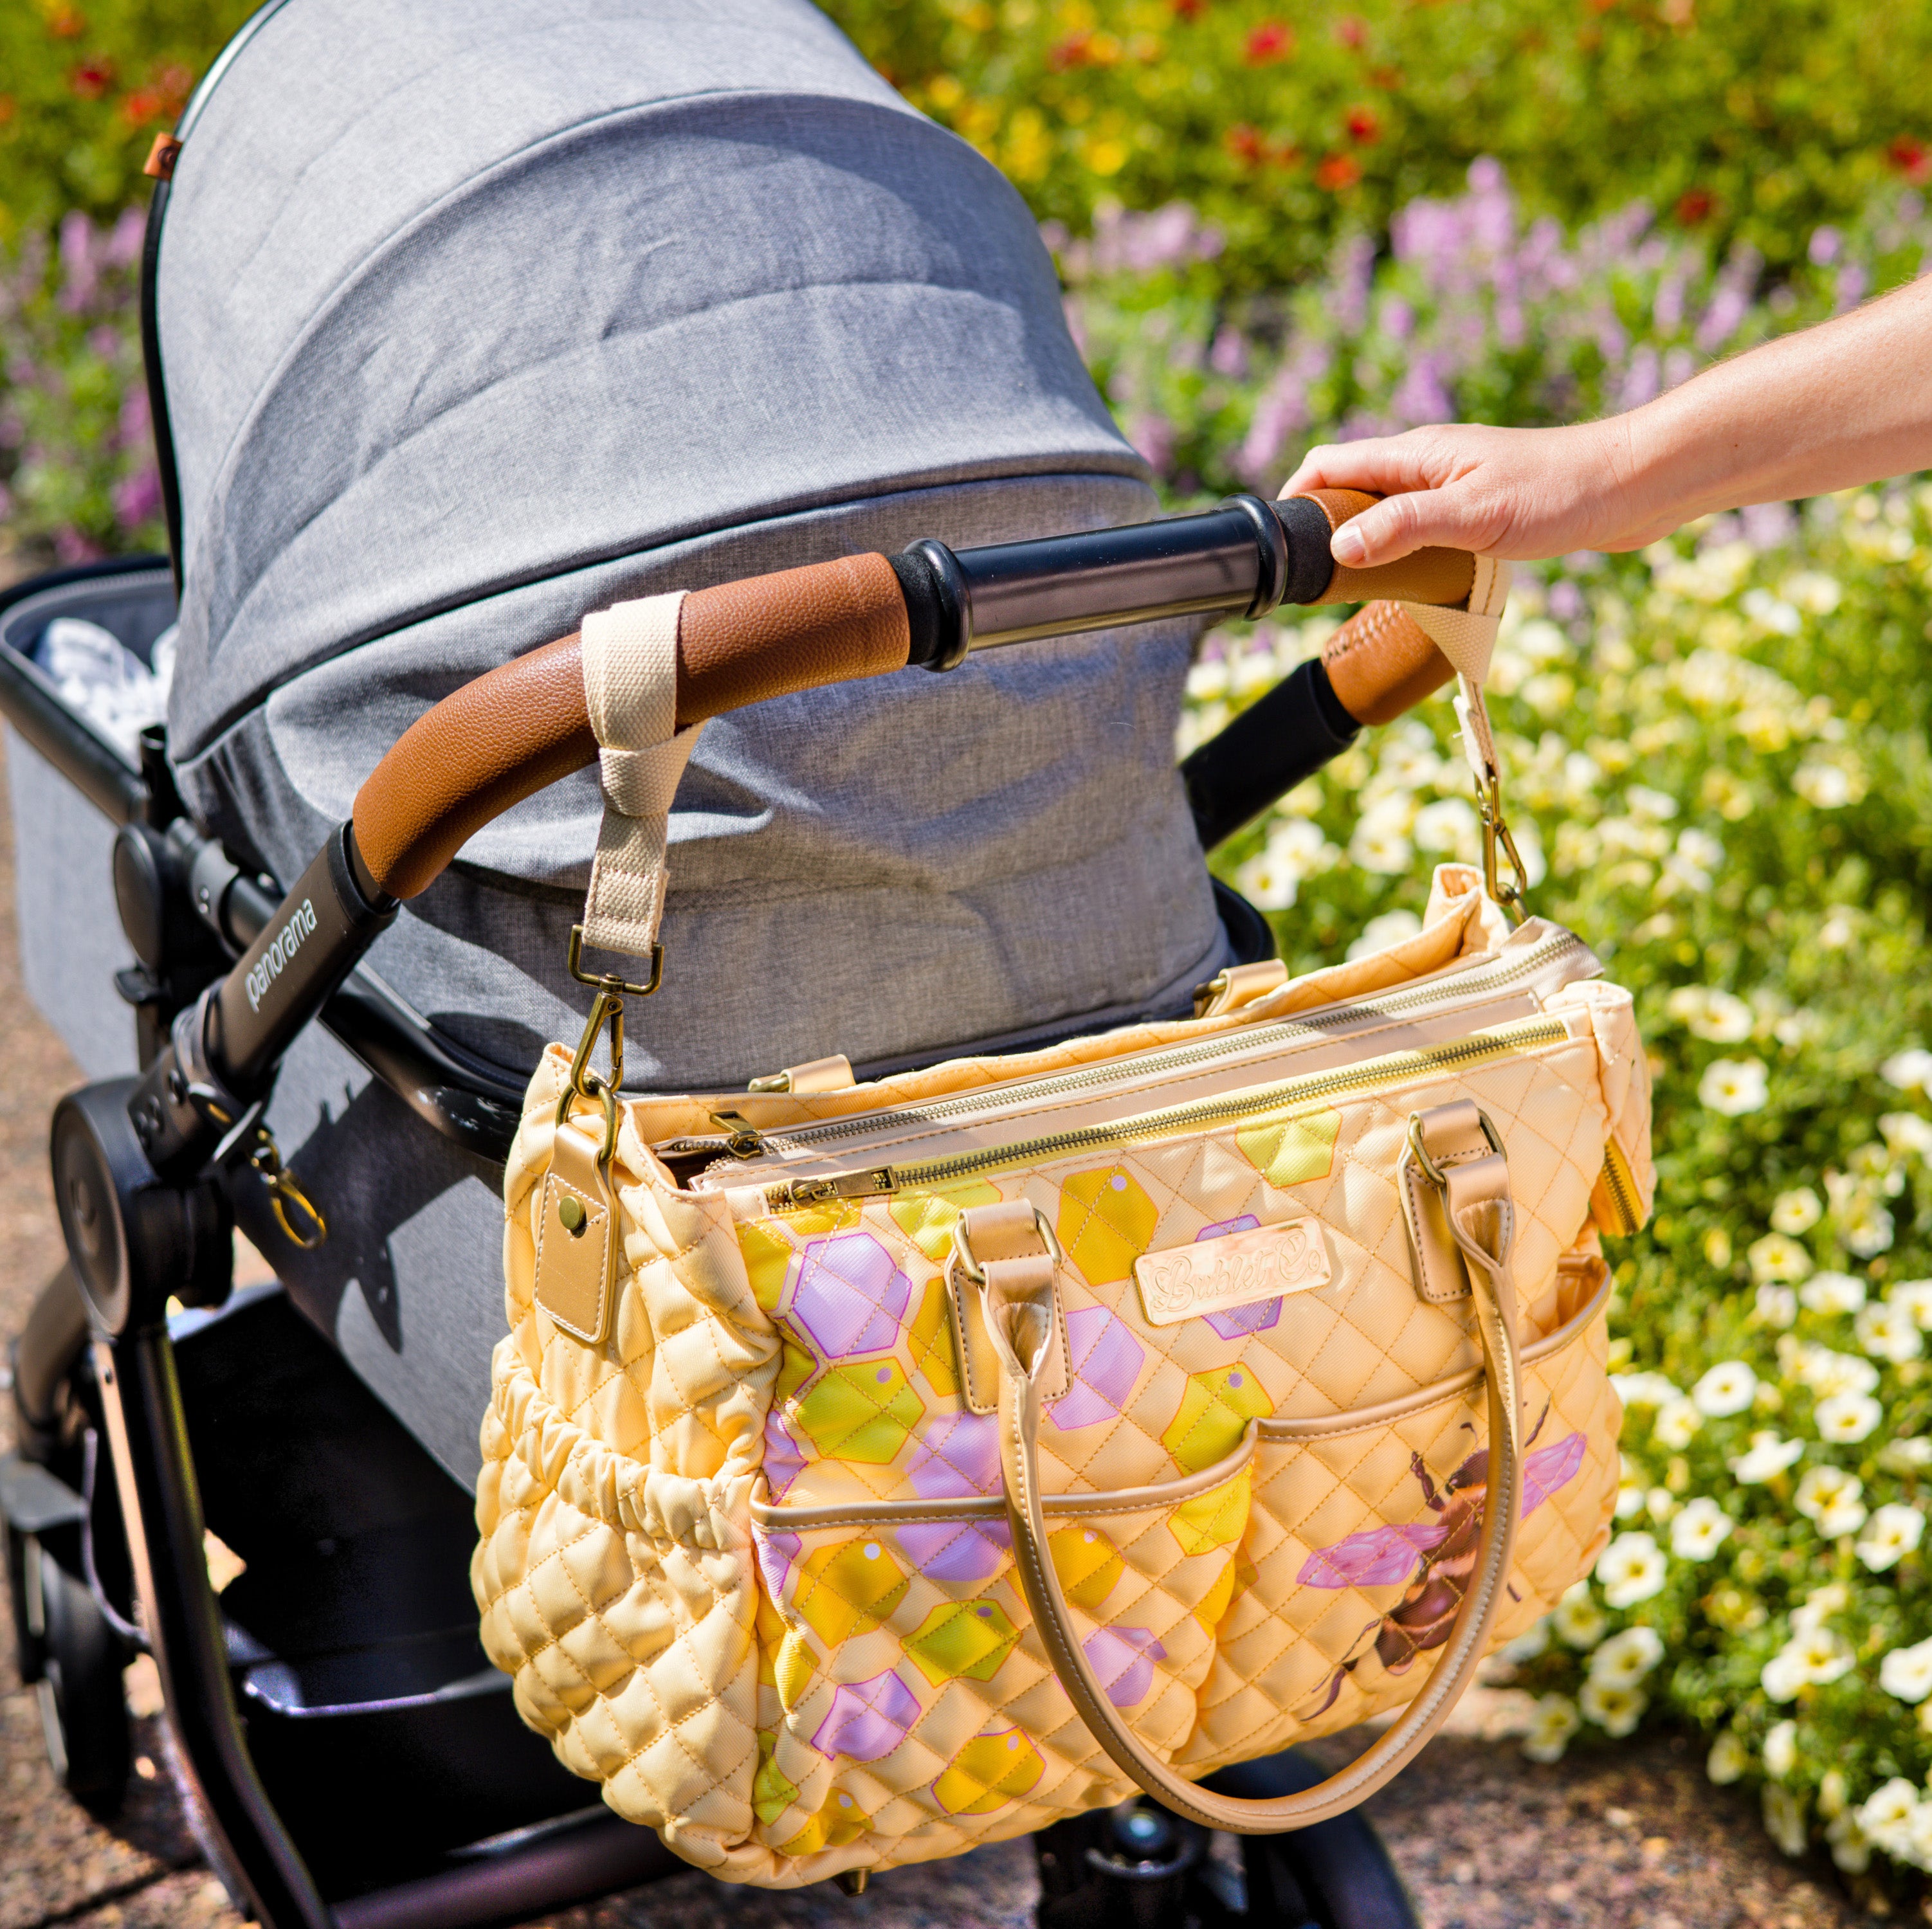 Mom's Diaper Bag Backpack - Best Diaper Bag Backpack for Women Mom Gift |  Affordable & Stylish Diaper Backpack Bag | UPPER - UPPER Brand